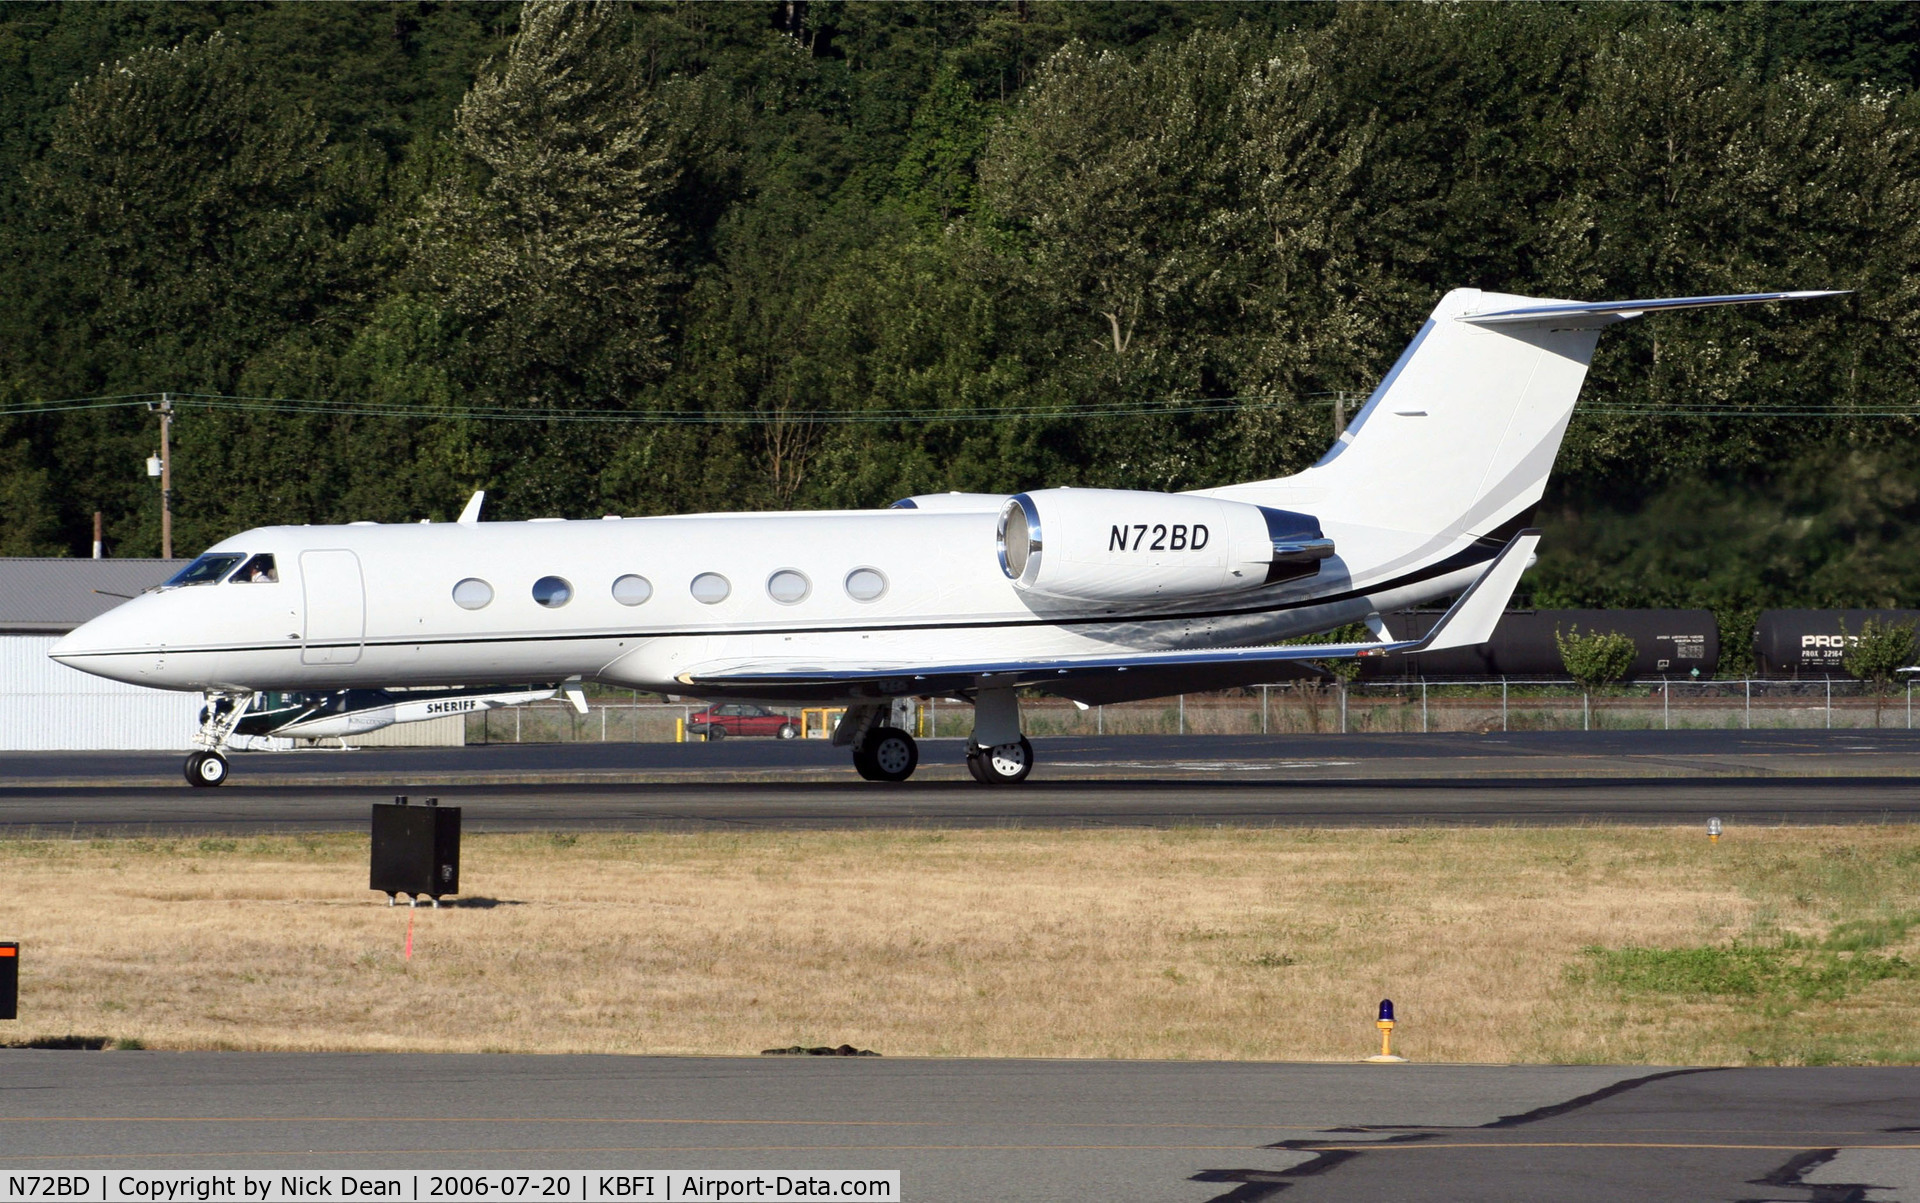 N72BD, 2000 Gulfstream Aerospace G-IV C/N 1420, KBFI